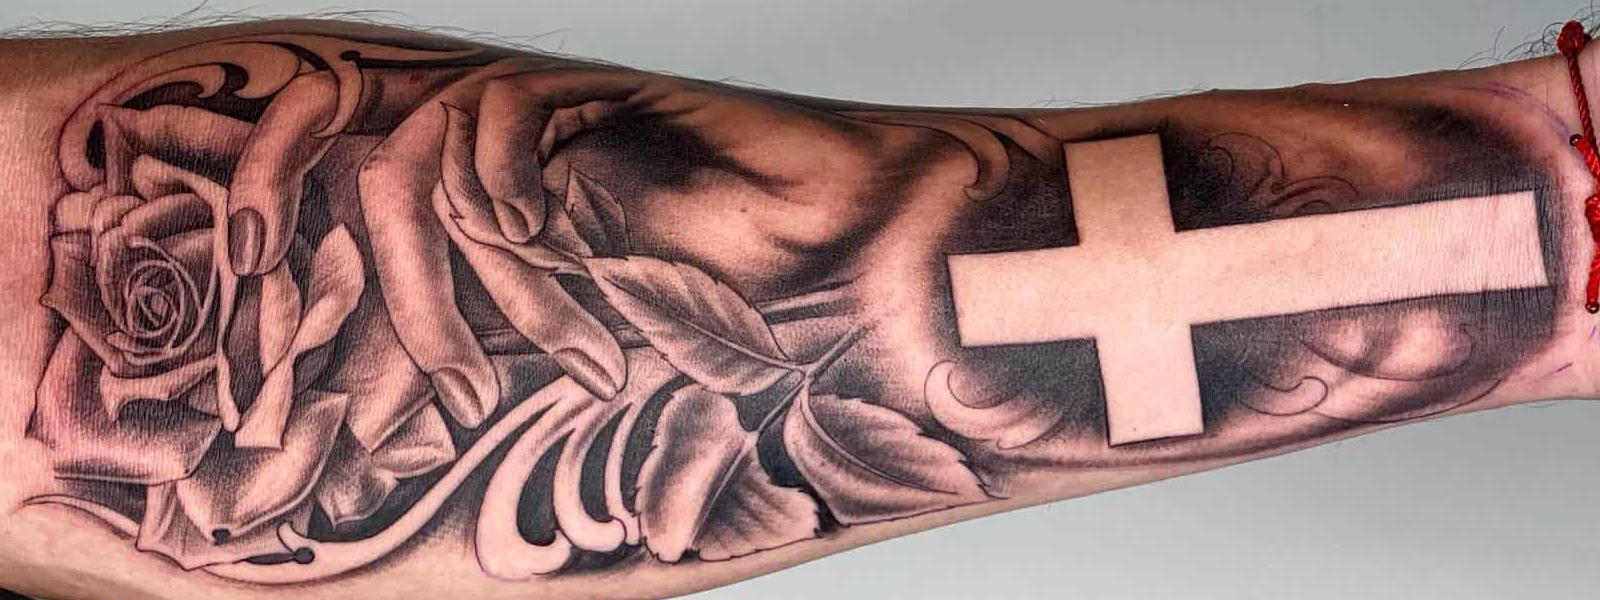 Armband Temporary Tattoo Forest Temporary Tattoo Men Women - Etsy Australia